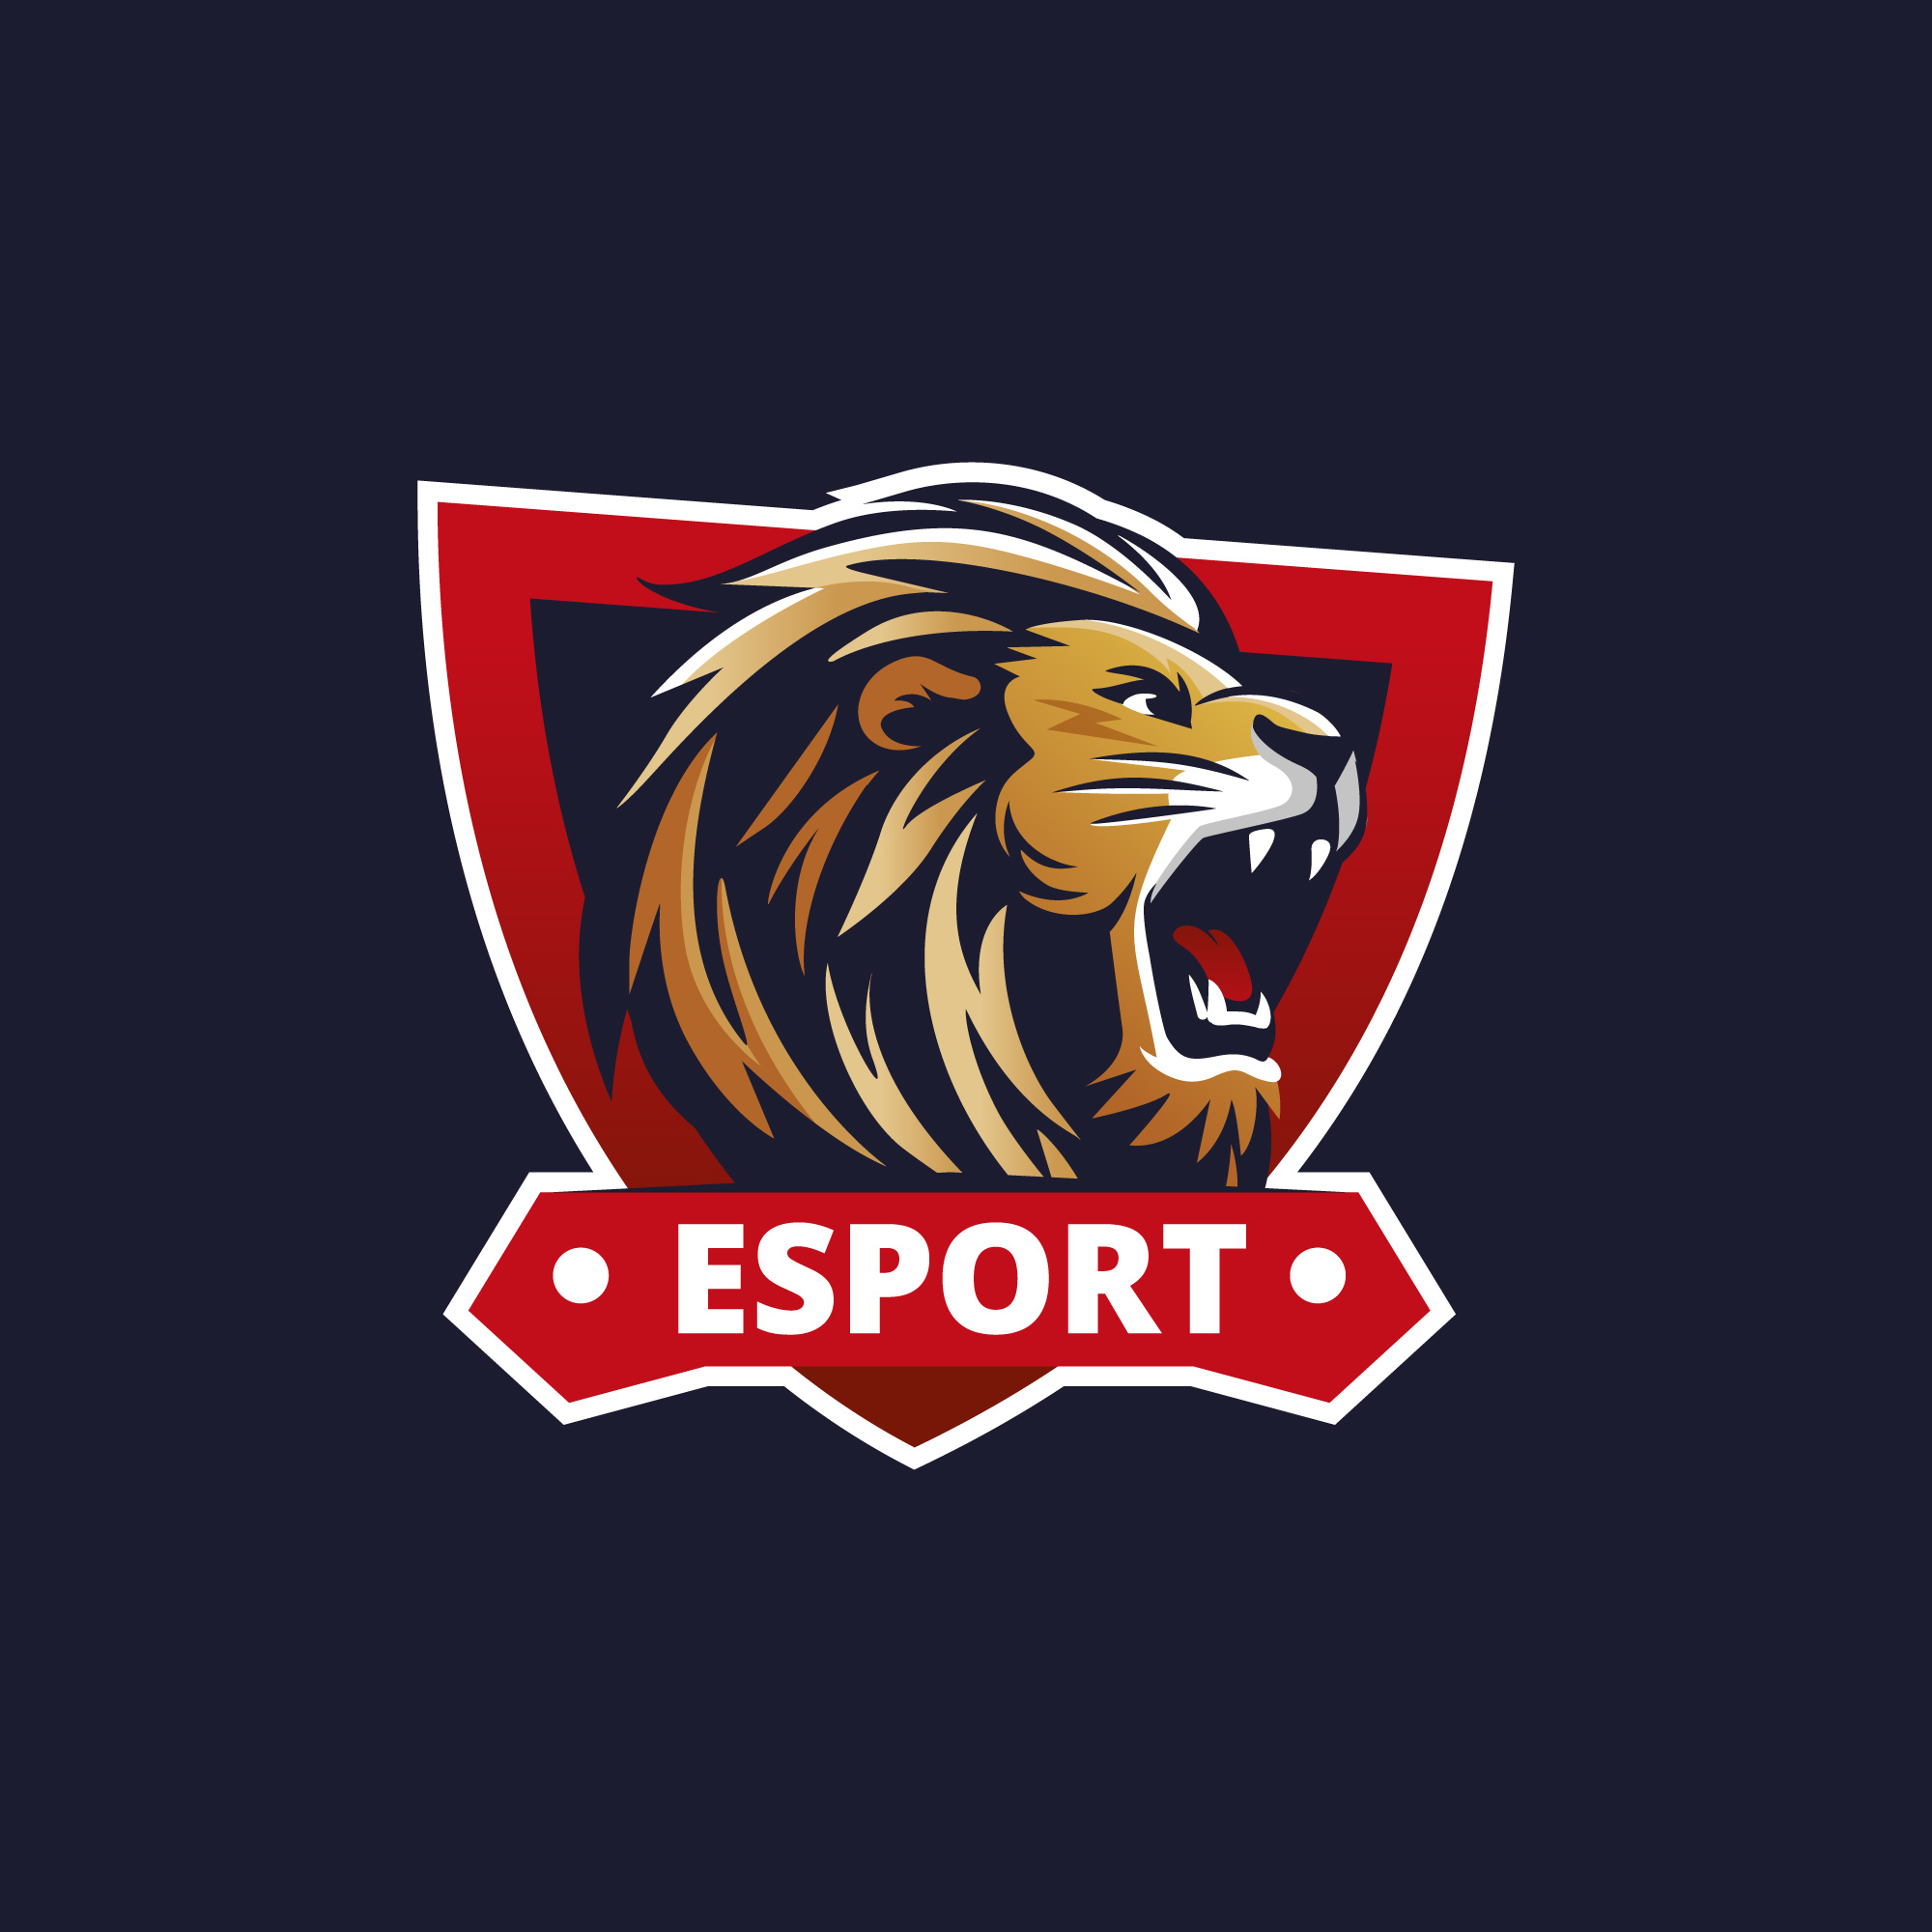 Esports Club logo